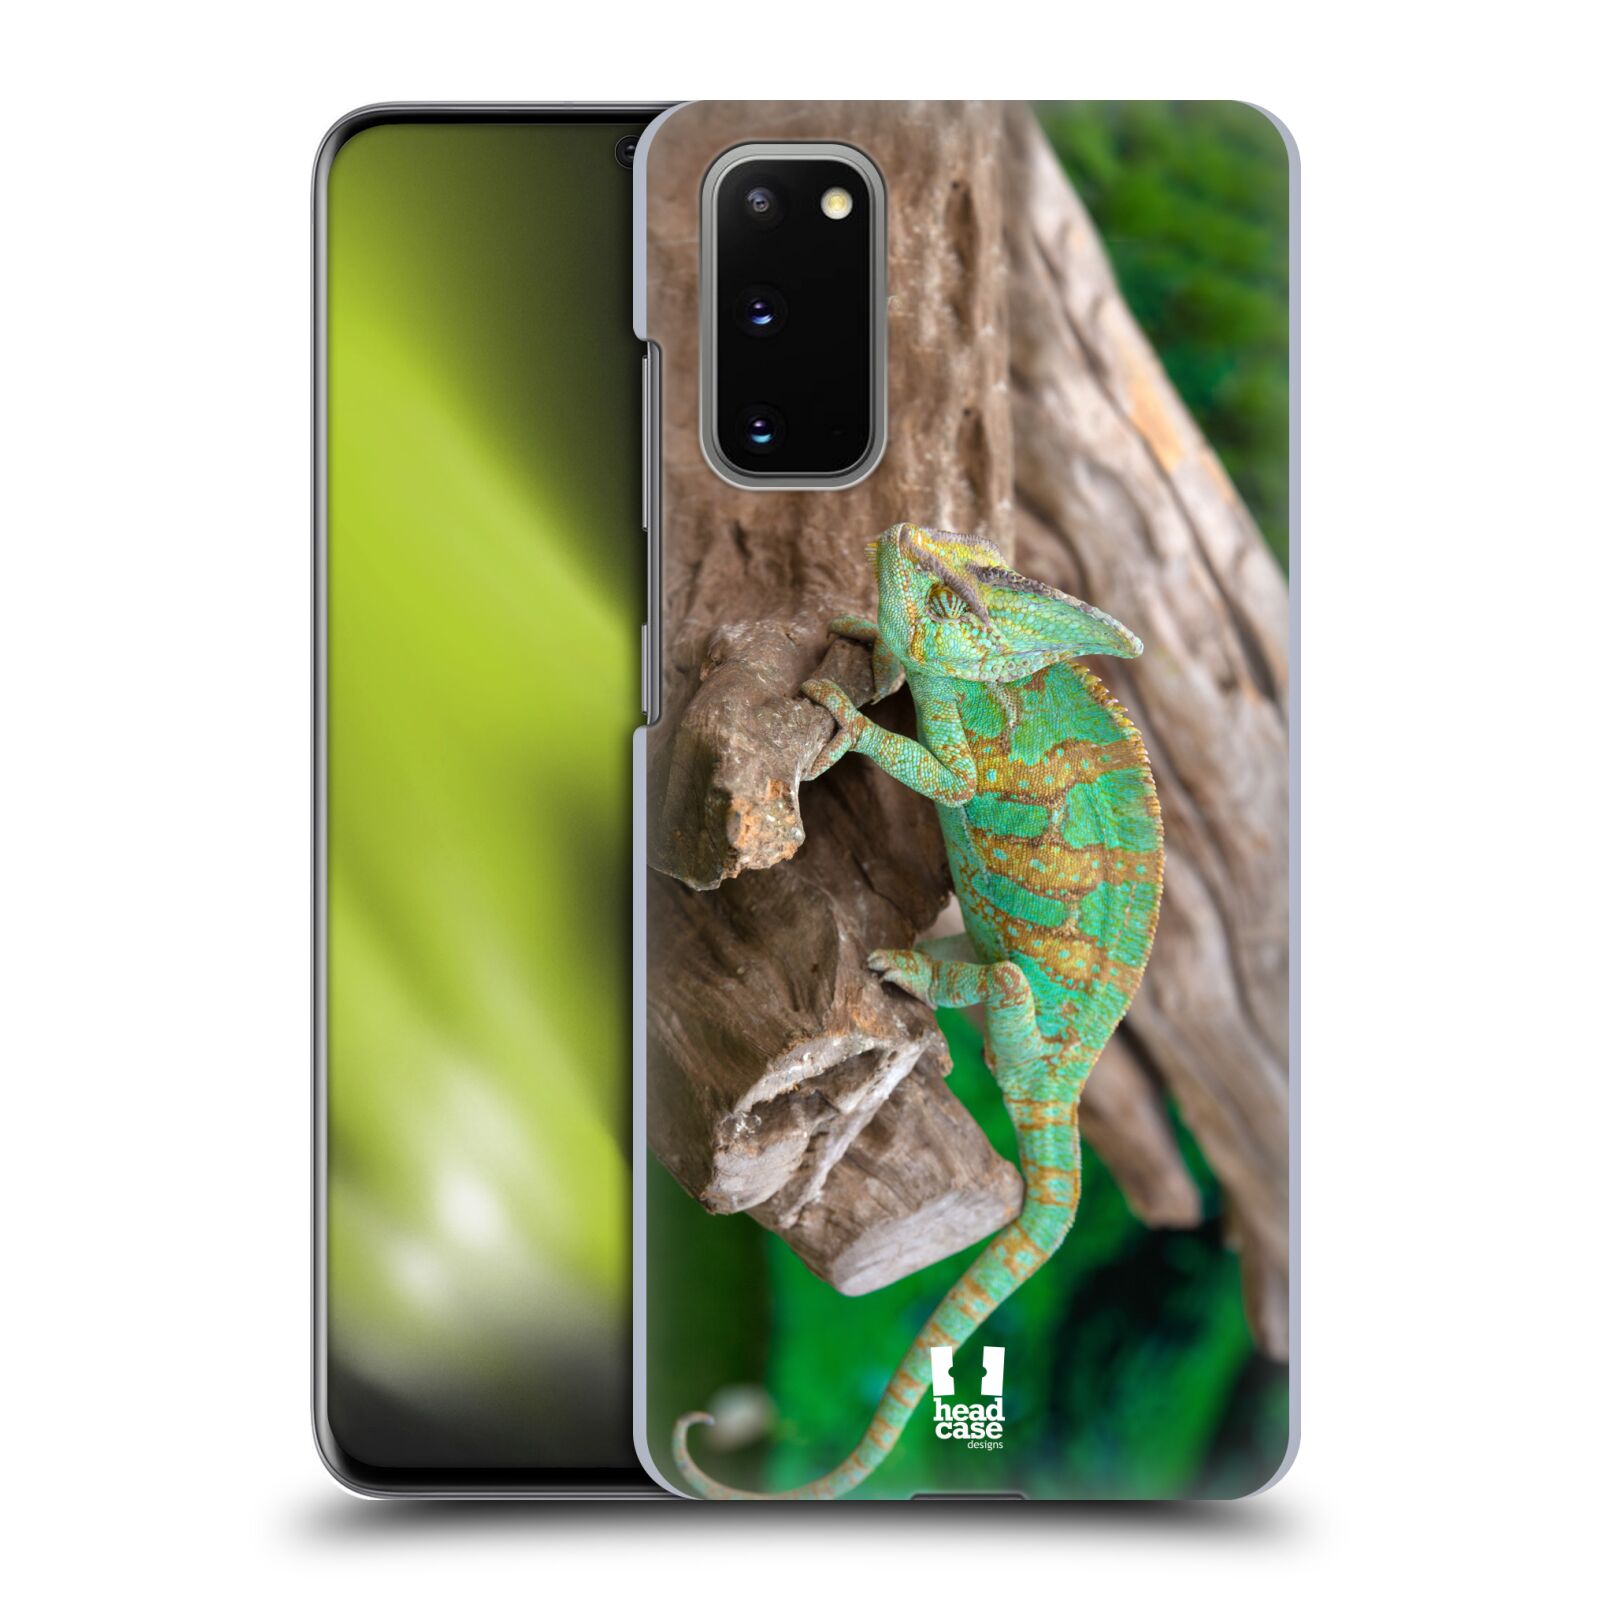 Pouzdro na mobil Samsung Galaxy S20 - HEAD CASE - vzor slavná zvířata foto chameleon